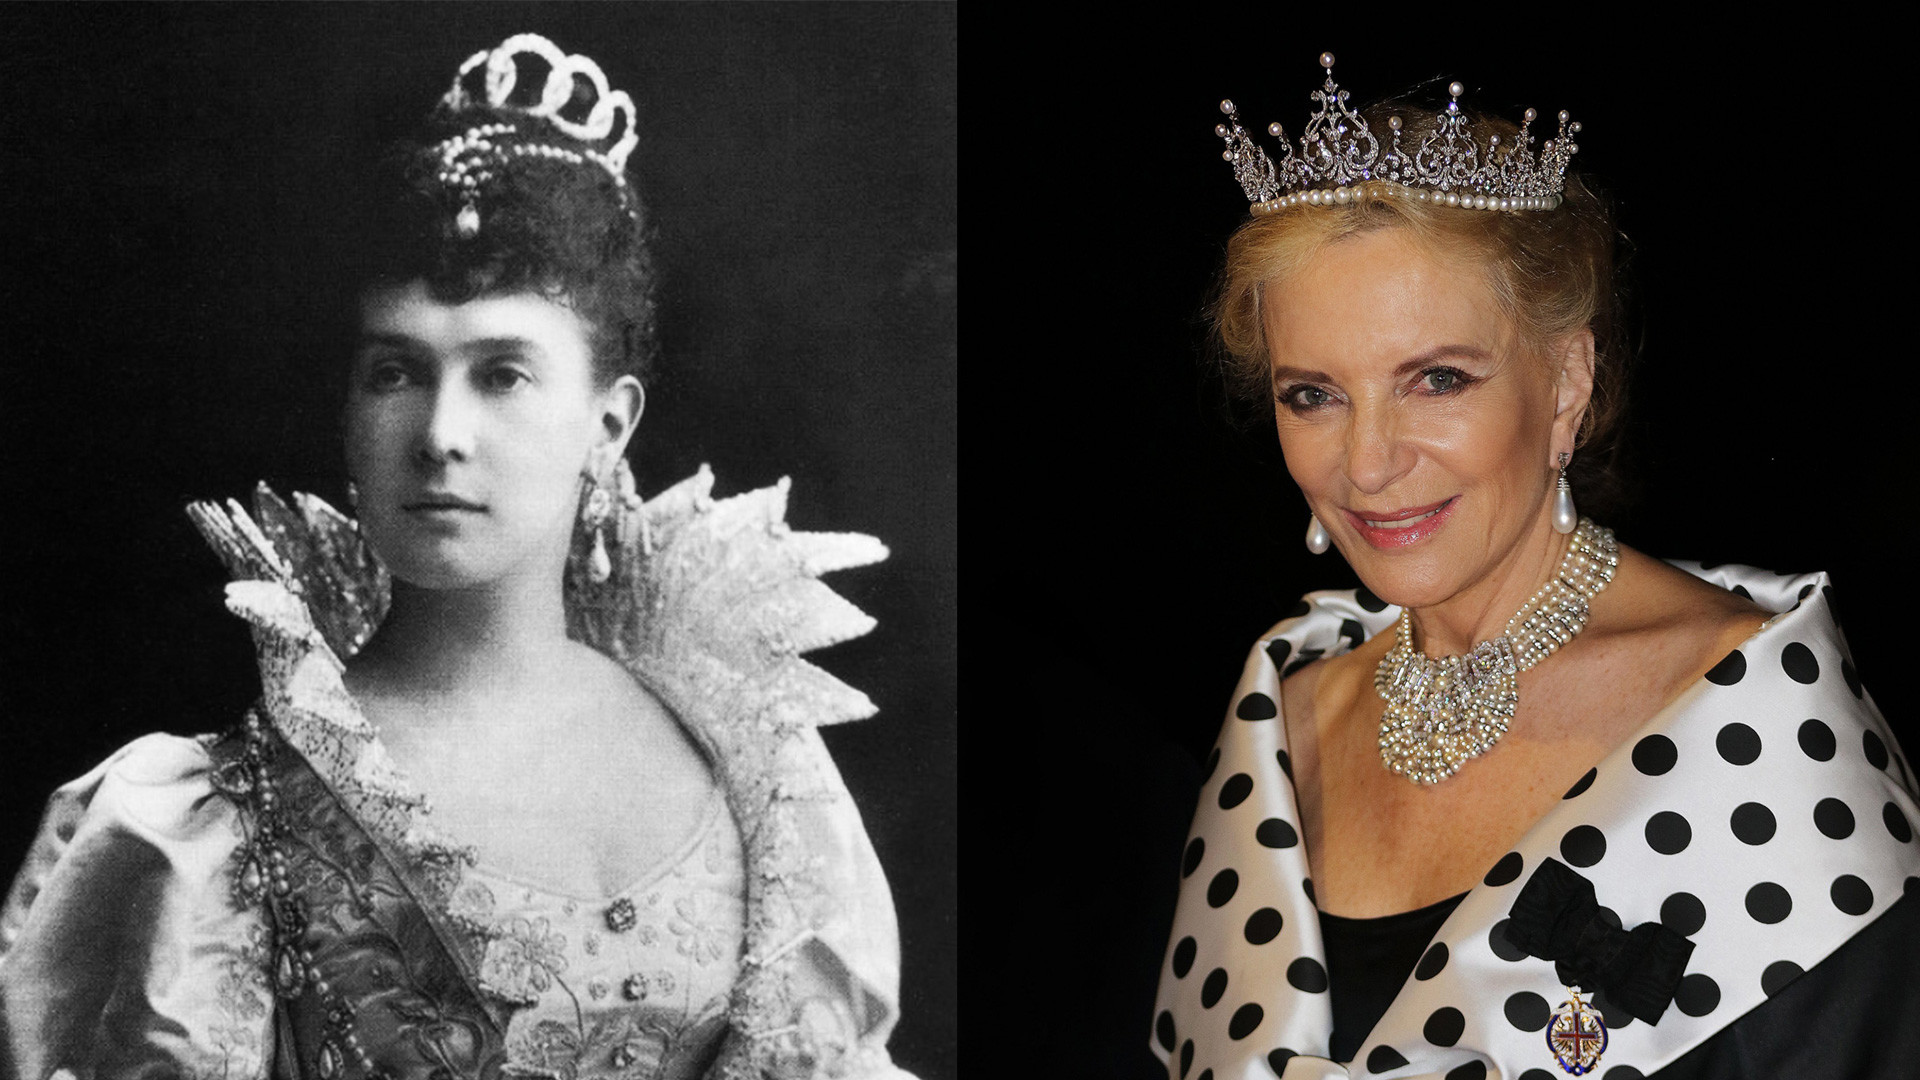 Слева: Мария Павловна в жемчужных серьгах. Справа: Принцесса Майкл Кентская в них же.